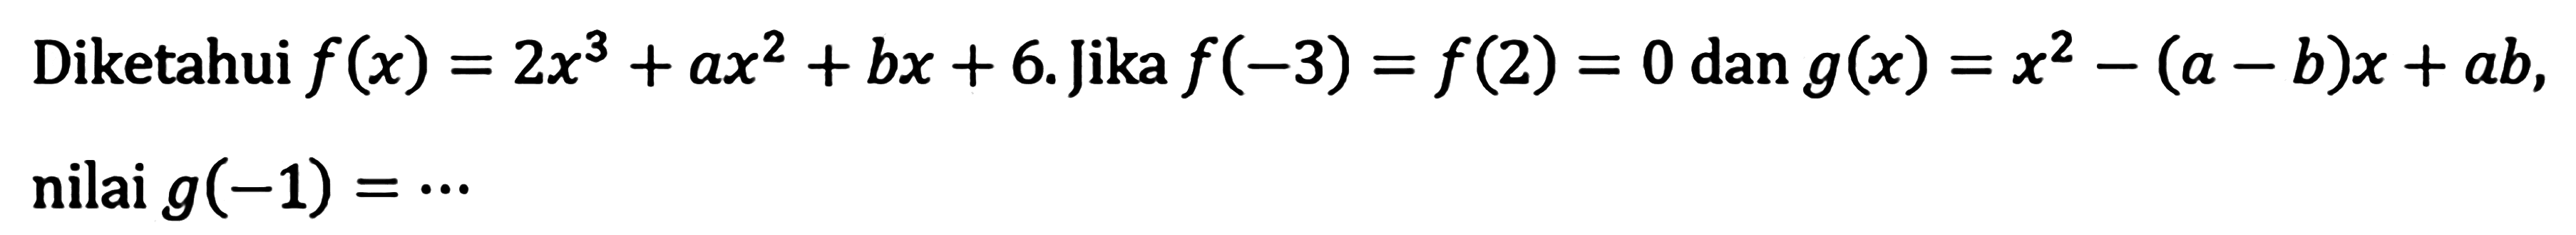 Diketahui f(x)=2x^3+bx+6. Jika f(-3)=f(2)=0 dan g(x)=x^2-(a-b)x+ab, nilai g(-1) = ...